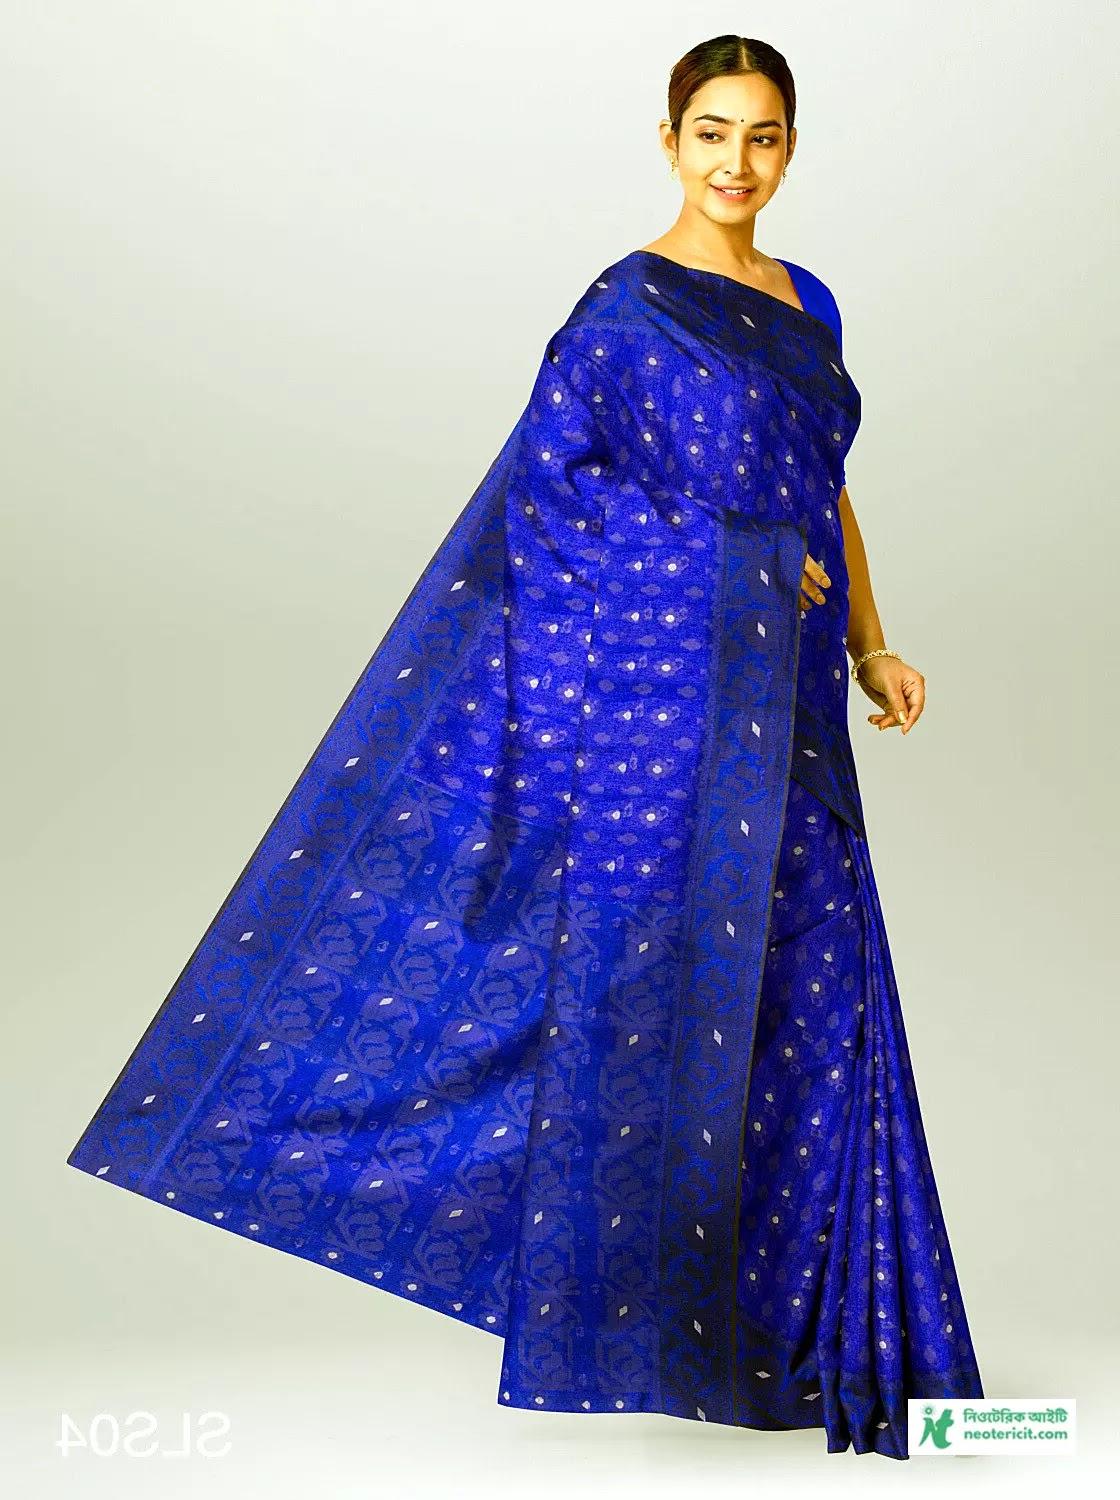 নীল শাড়ির ডিজাইন - নীল শাড়ি পরা পিক, ফটো , পিকচার - নীল শাড়ির ডিজাইন ও দাম  - blue saree pic - NeotericIT.com - Image no 13